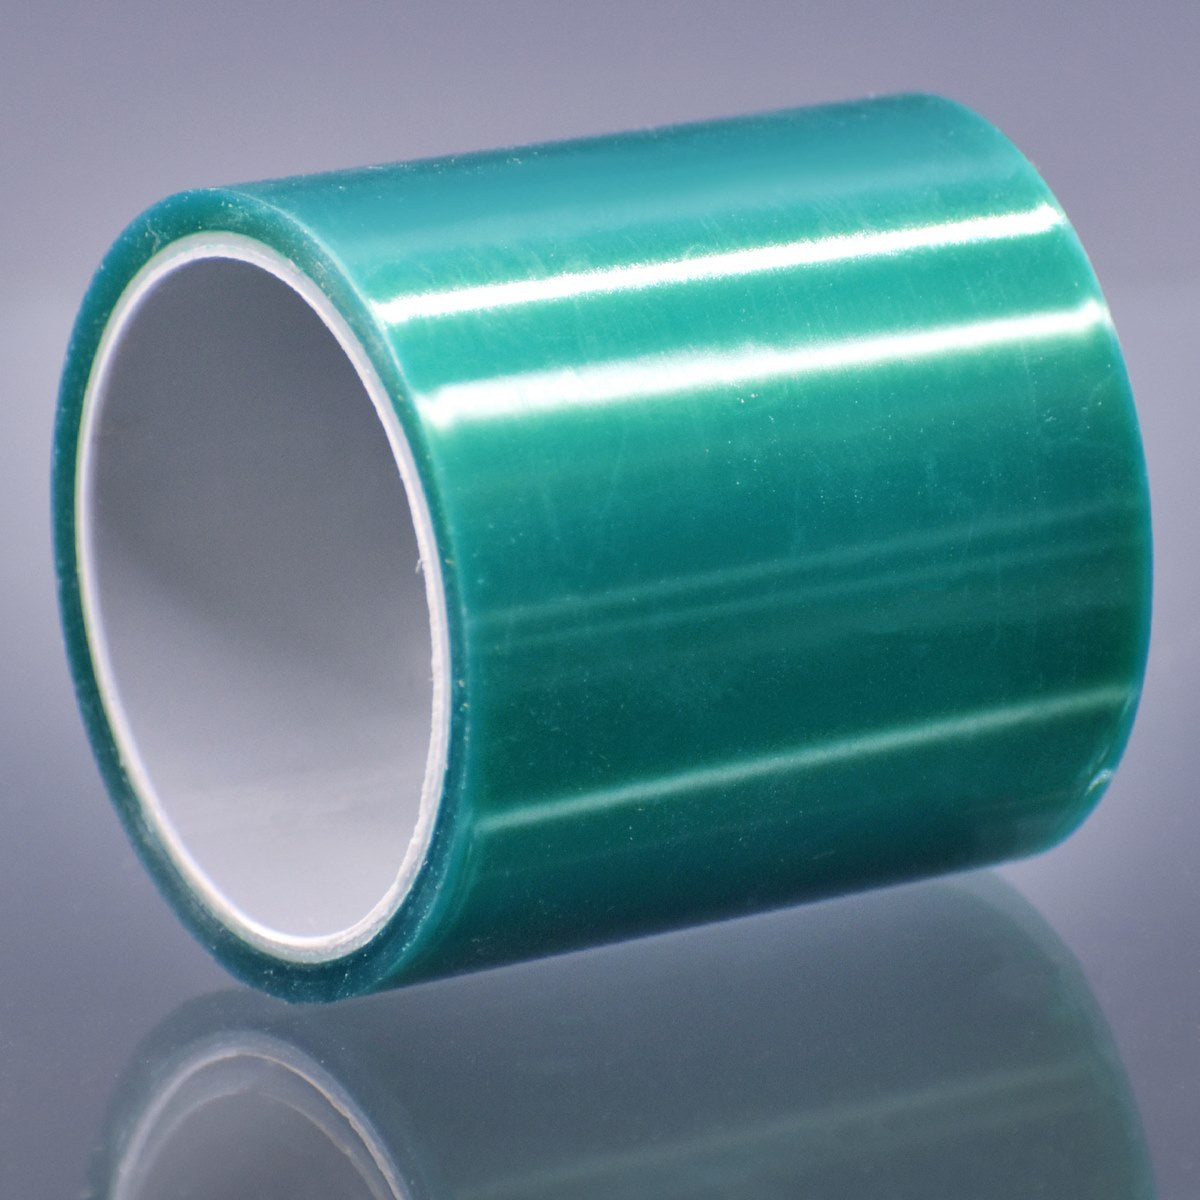 jags-mumbai Tape Seamless UV Resin Tape JURT00, resin pendant Tape, resin bubble free tape, traceless Resin tape for pendants and jewelry